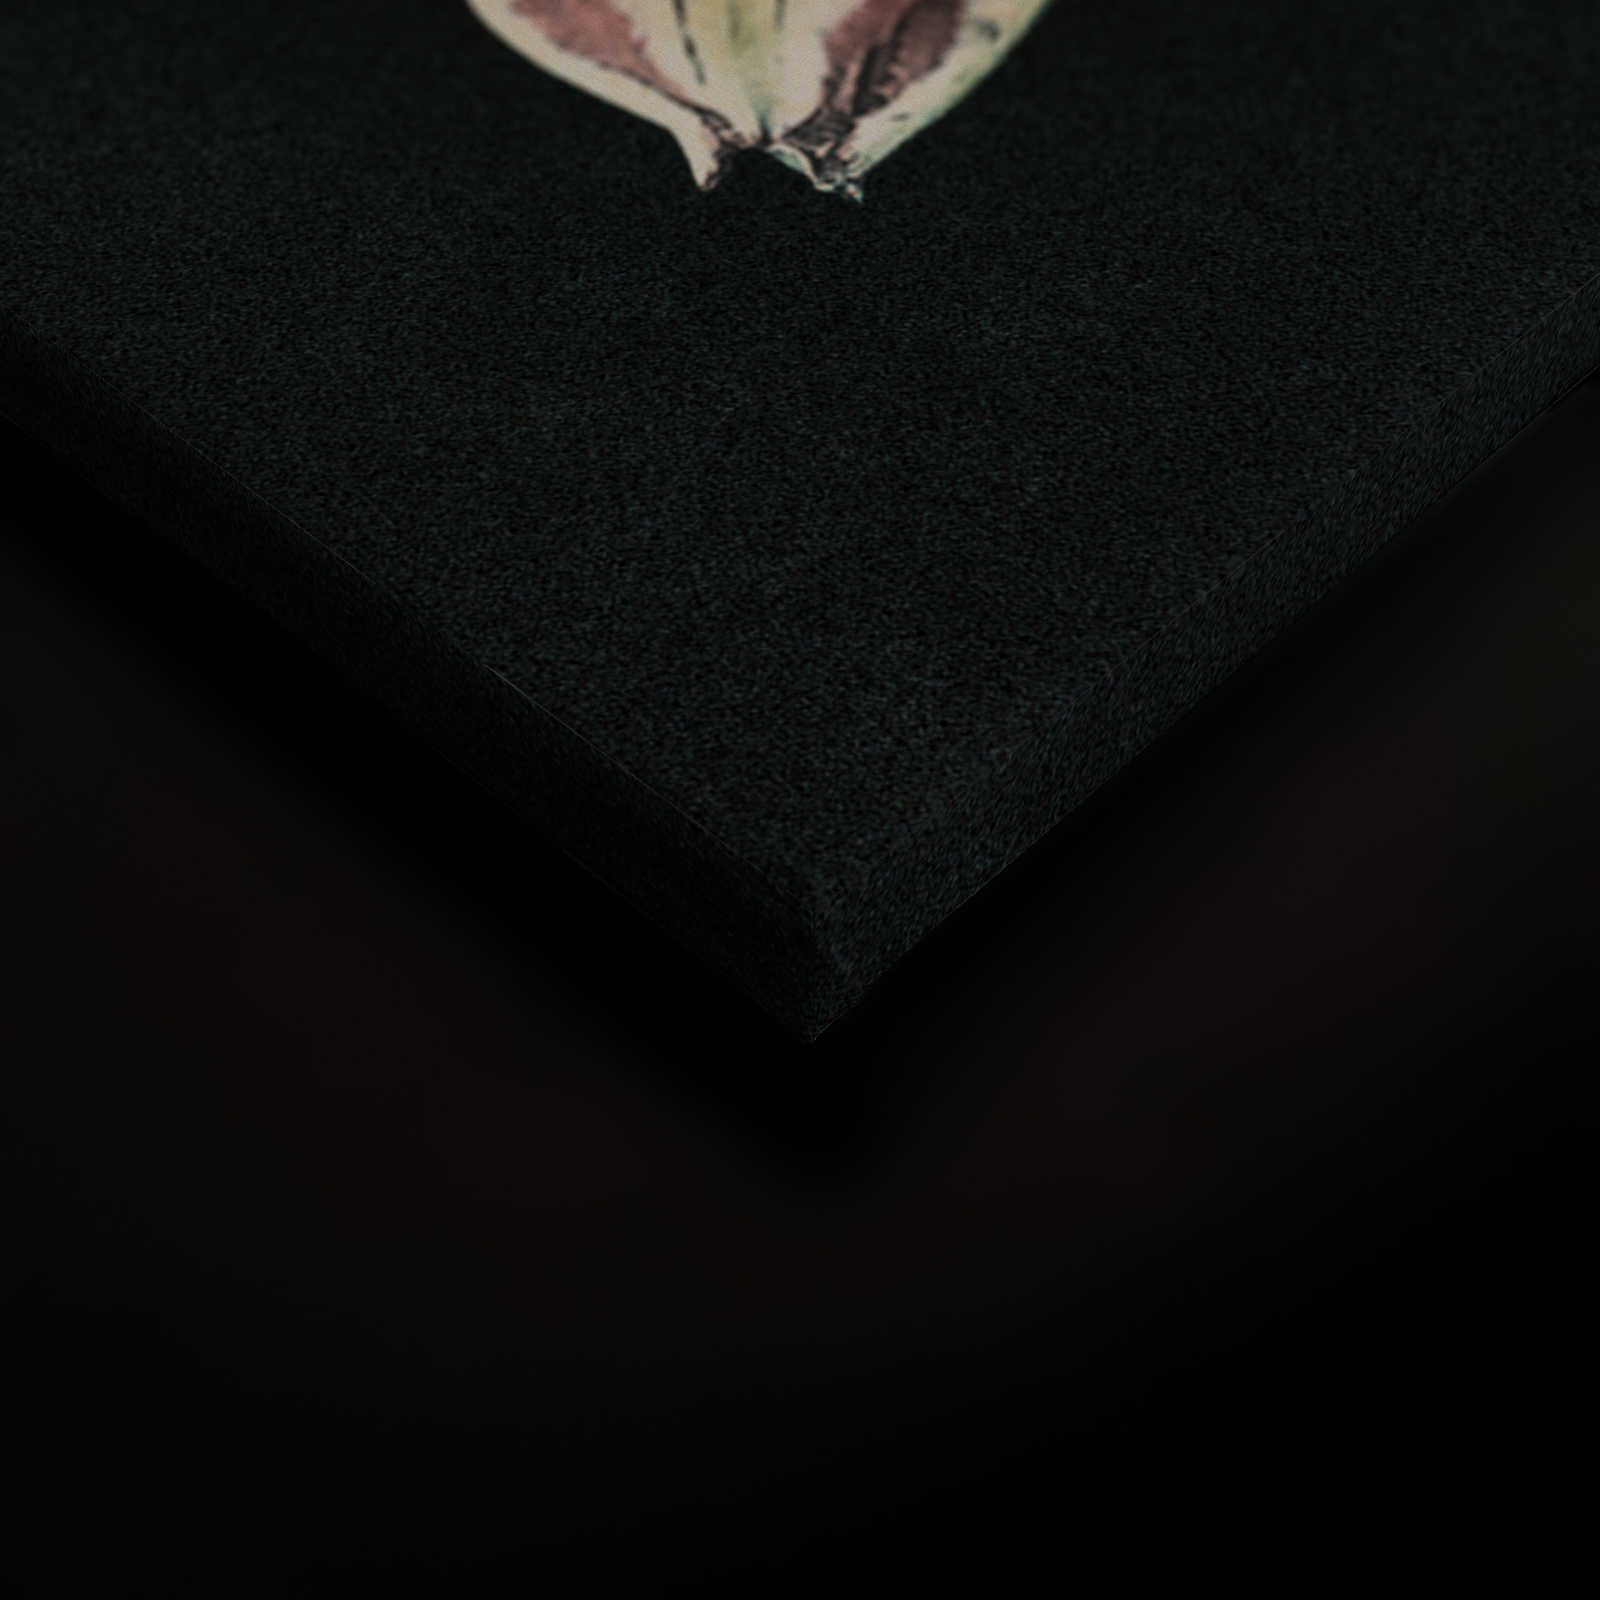             Drama queen 1 - Quadro su tela con bouquet e sfondo scuro in struttura di cartone - 0,90 m x 0,60 m
        